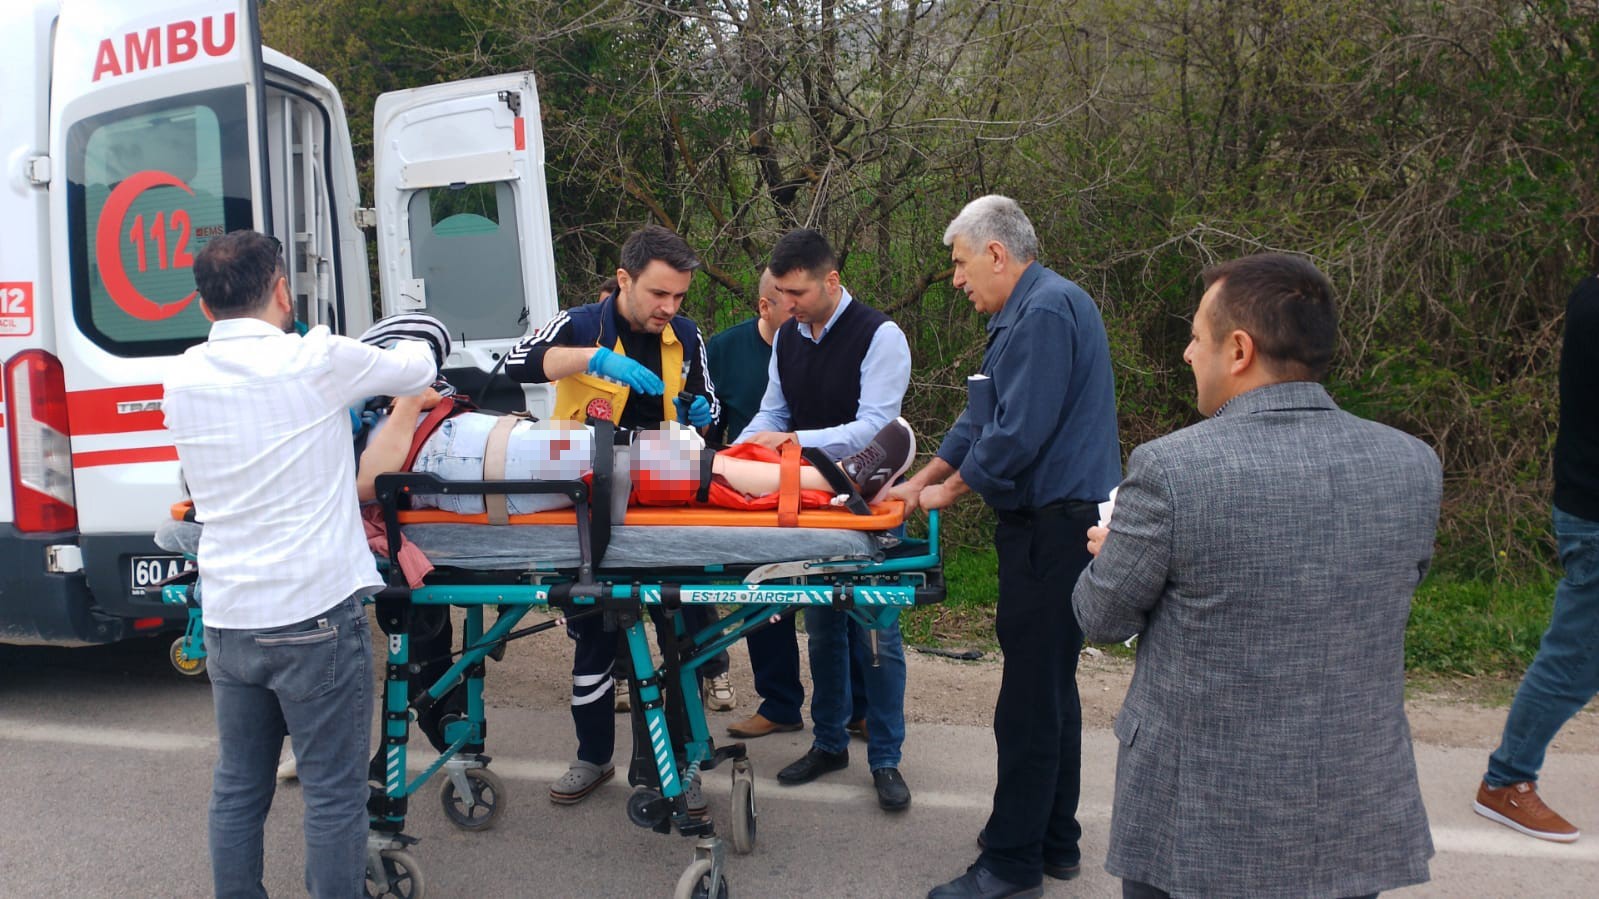 tokat’taki kazada 1 kişi hayatını kaybetti: 3 yaralının durumu ağır